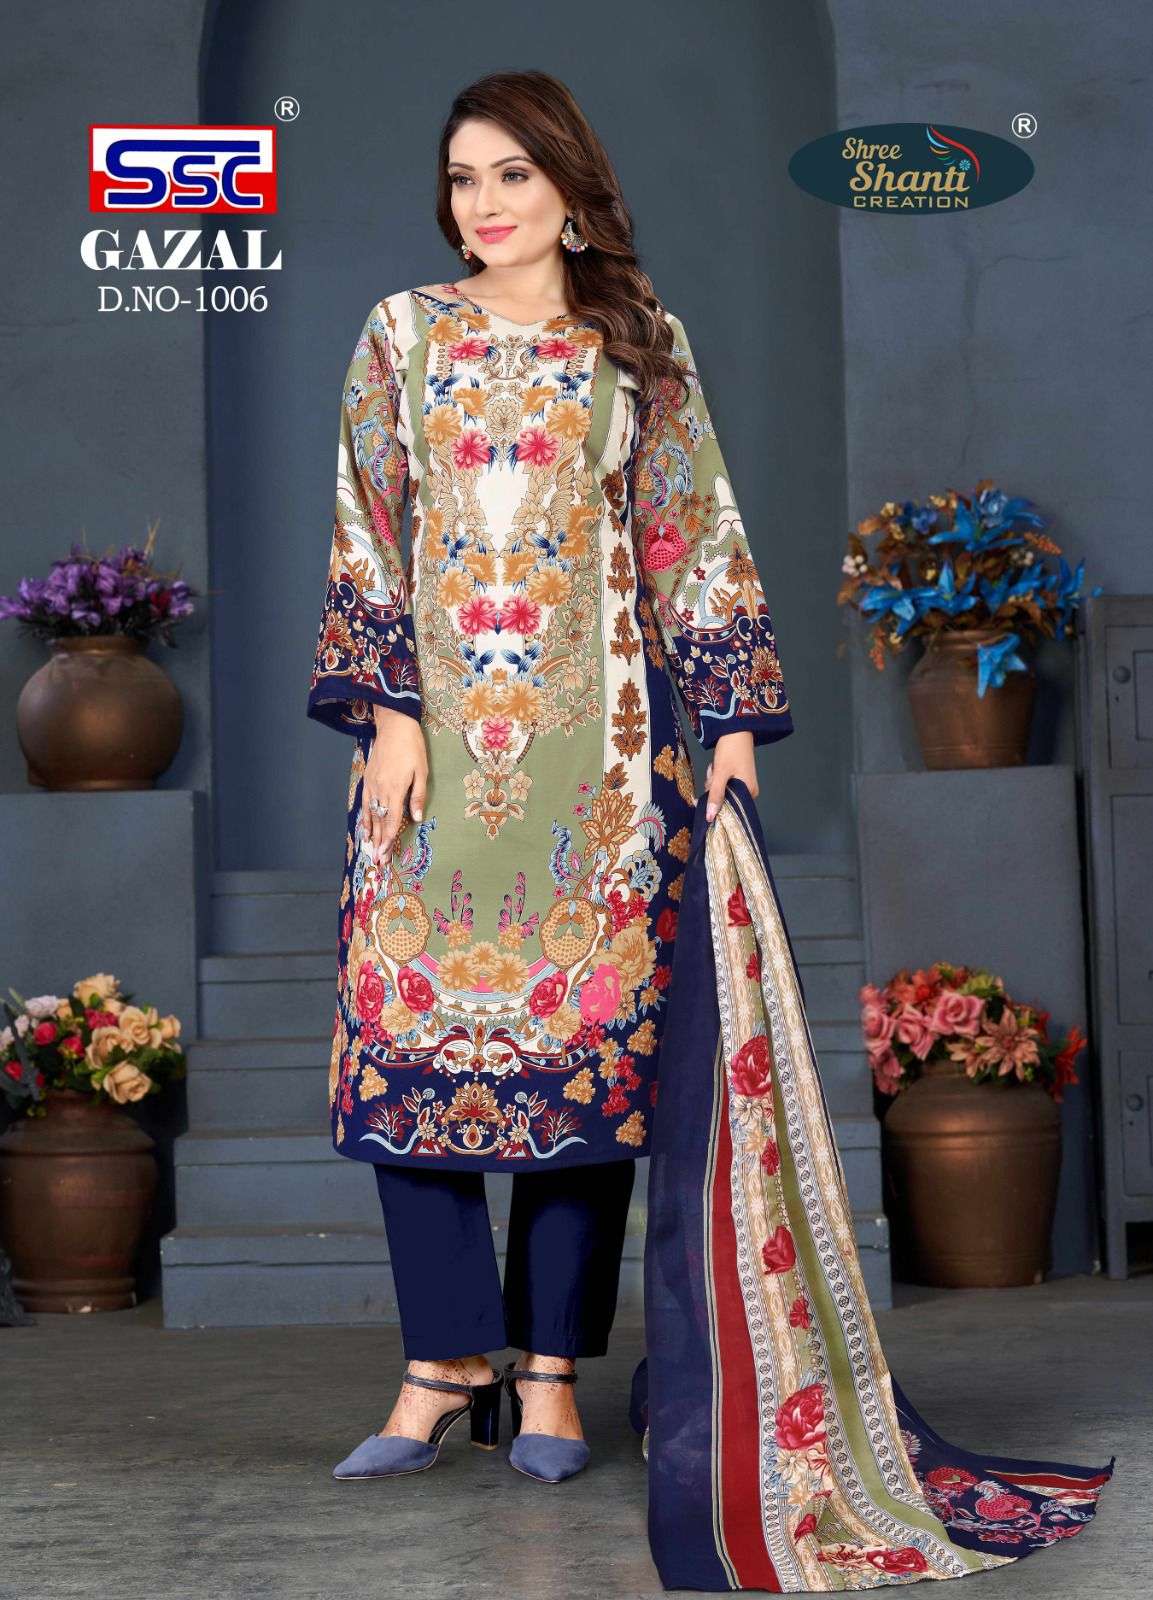 Ssc present gazal vol 1 karachi style suits wholesaler of Pakistani suits